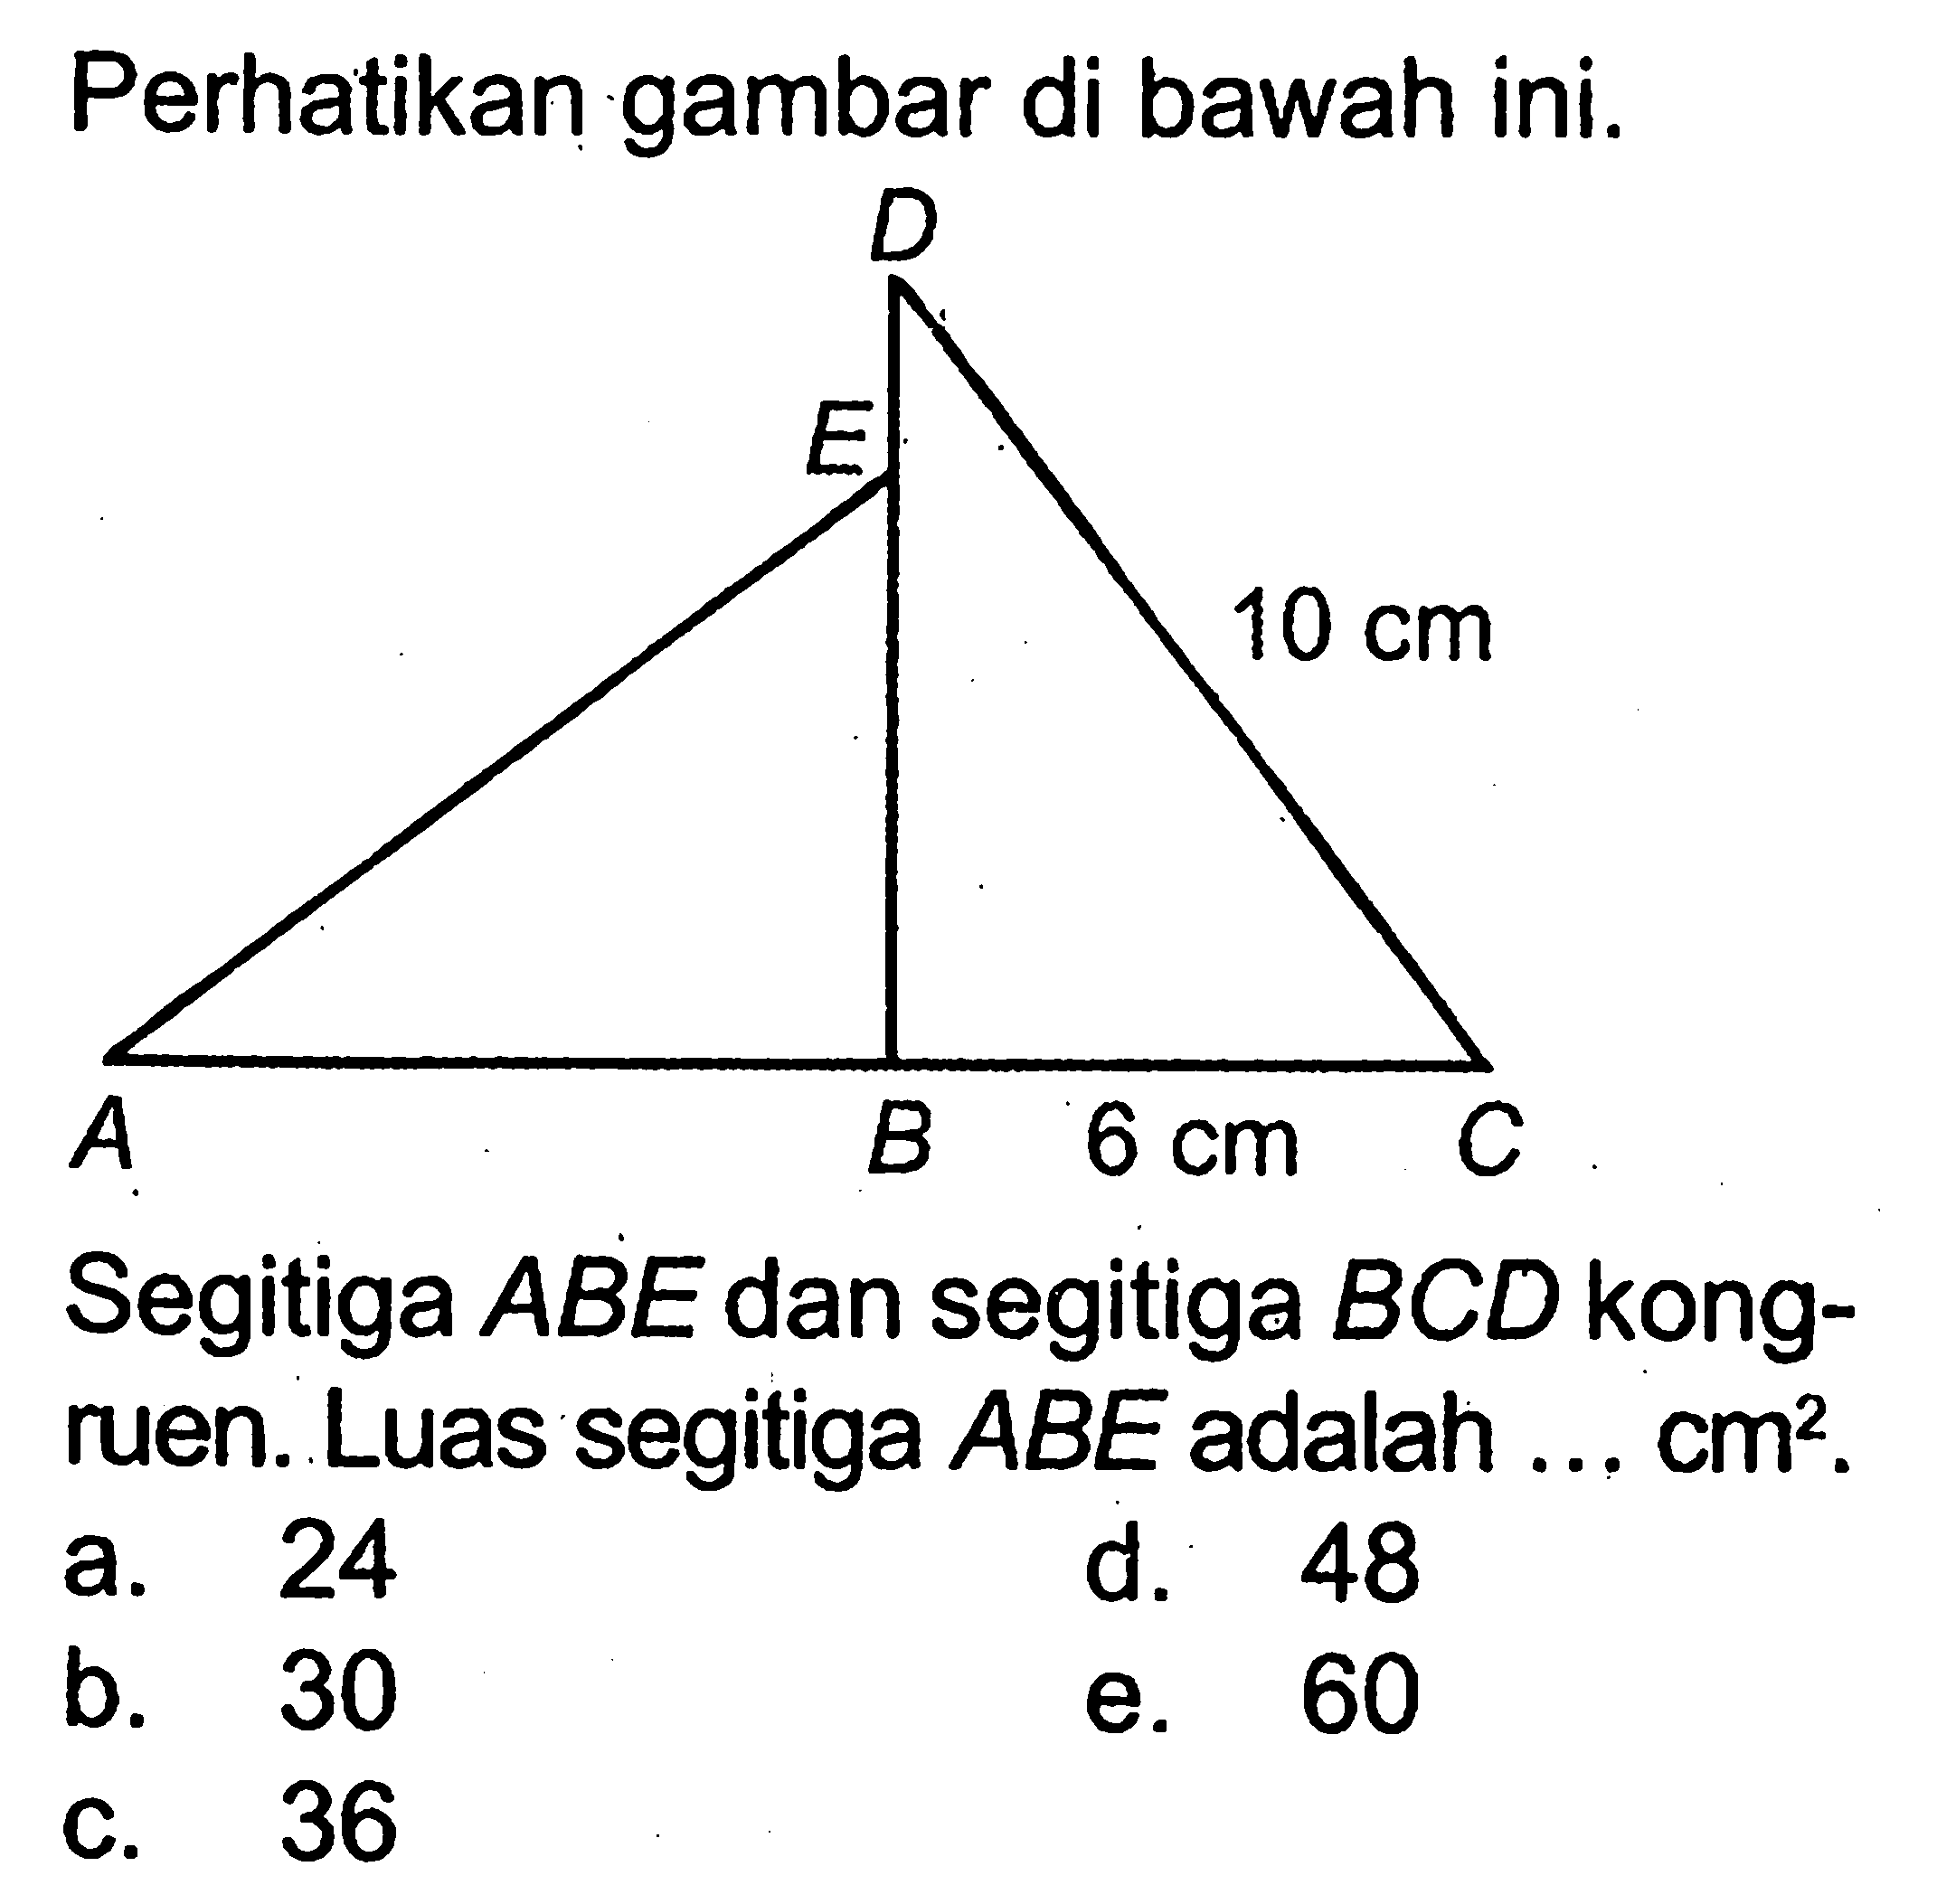 Perhatikan gambar di bawah ini.Segitiga  ABE  dan segitiga  BCD  kongruen. Luas segitiga  ABE  adalah ...  cm^2 . 